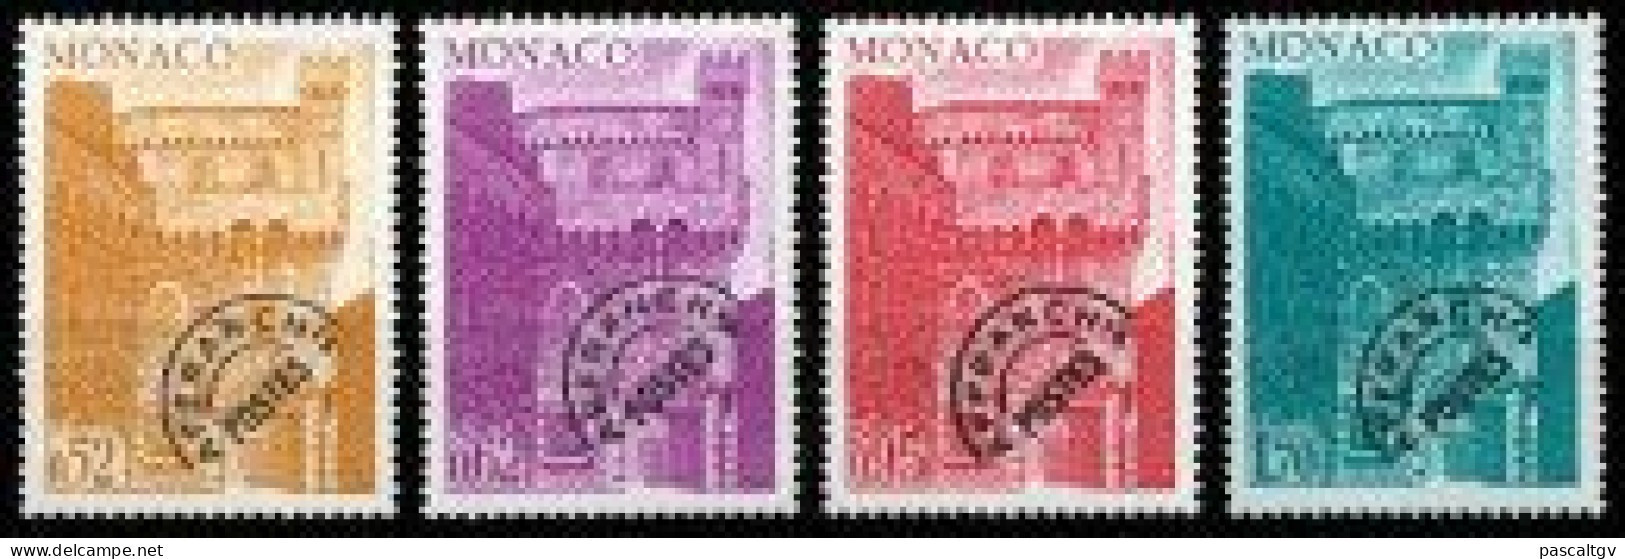 MONACO - 1976 - PREO - Série N° 42 à 45 ** - Neuf - Luxe - - Prematasellado